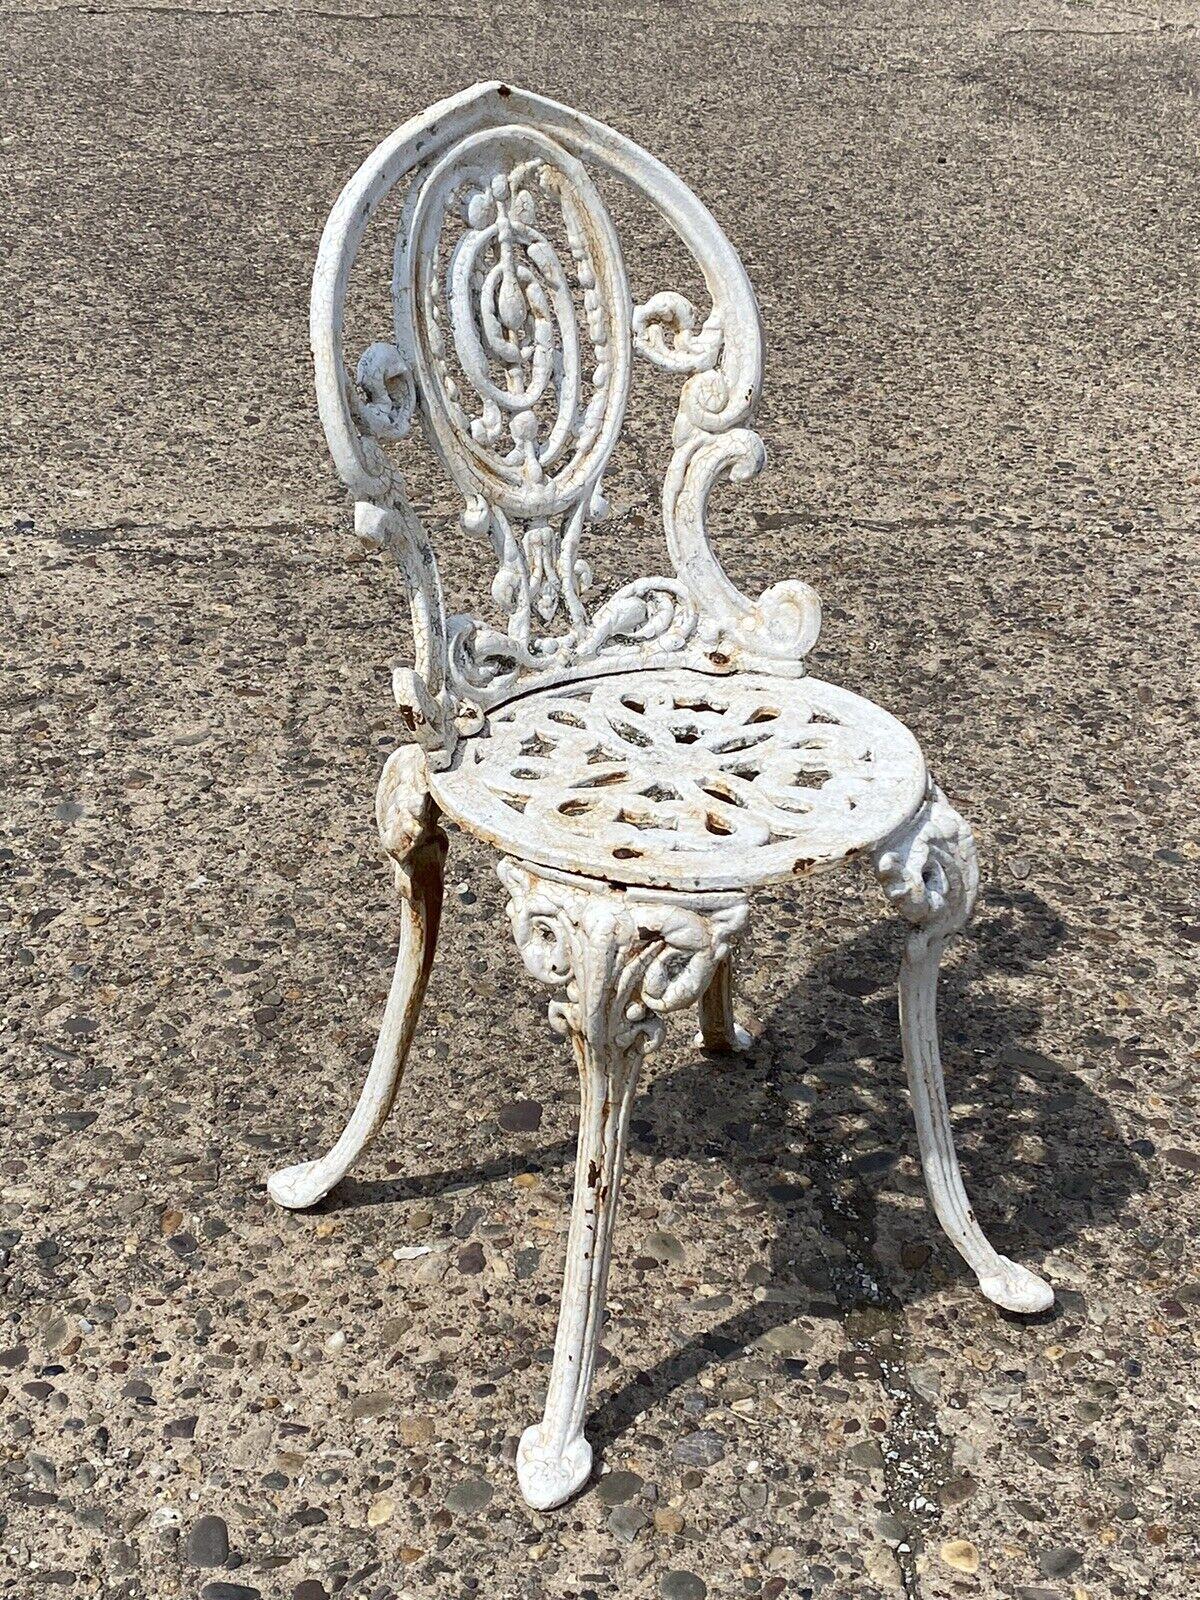 Antike Französisch viktorianischen Gusseisen weiß kleinen Garten Patio Side Chair. Artikel vorgestellt ist eine schöne kleine Größe, schwere Gusseisen Konstruktion, weiß lackiert, sehr schöne antike Stuhl. Circa 19. Jahrhundert. Abmessungen: 30